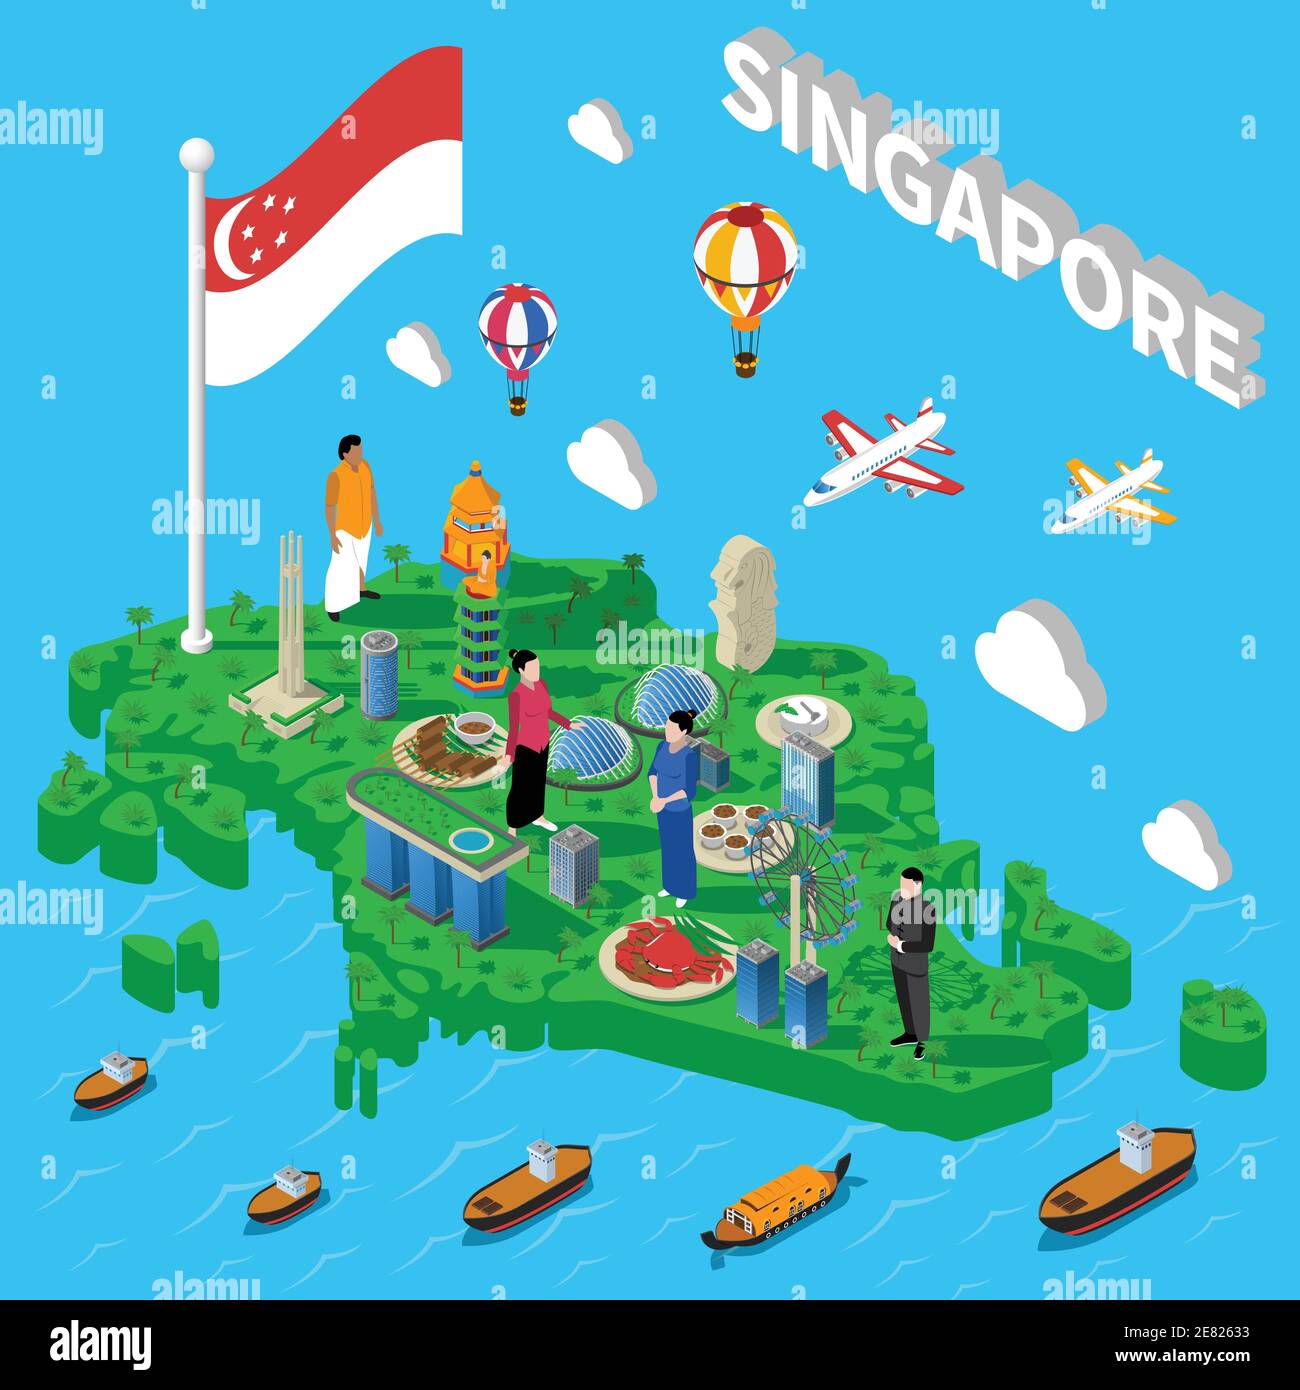 Carte des symboles culturels de Singapour pour les touristes avec les points de repère de transport et illustration vectorielle isométrique représentant les plats de fruits de mer nationaux Illustration de Vecteur